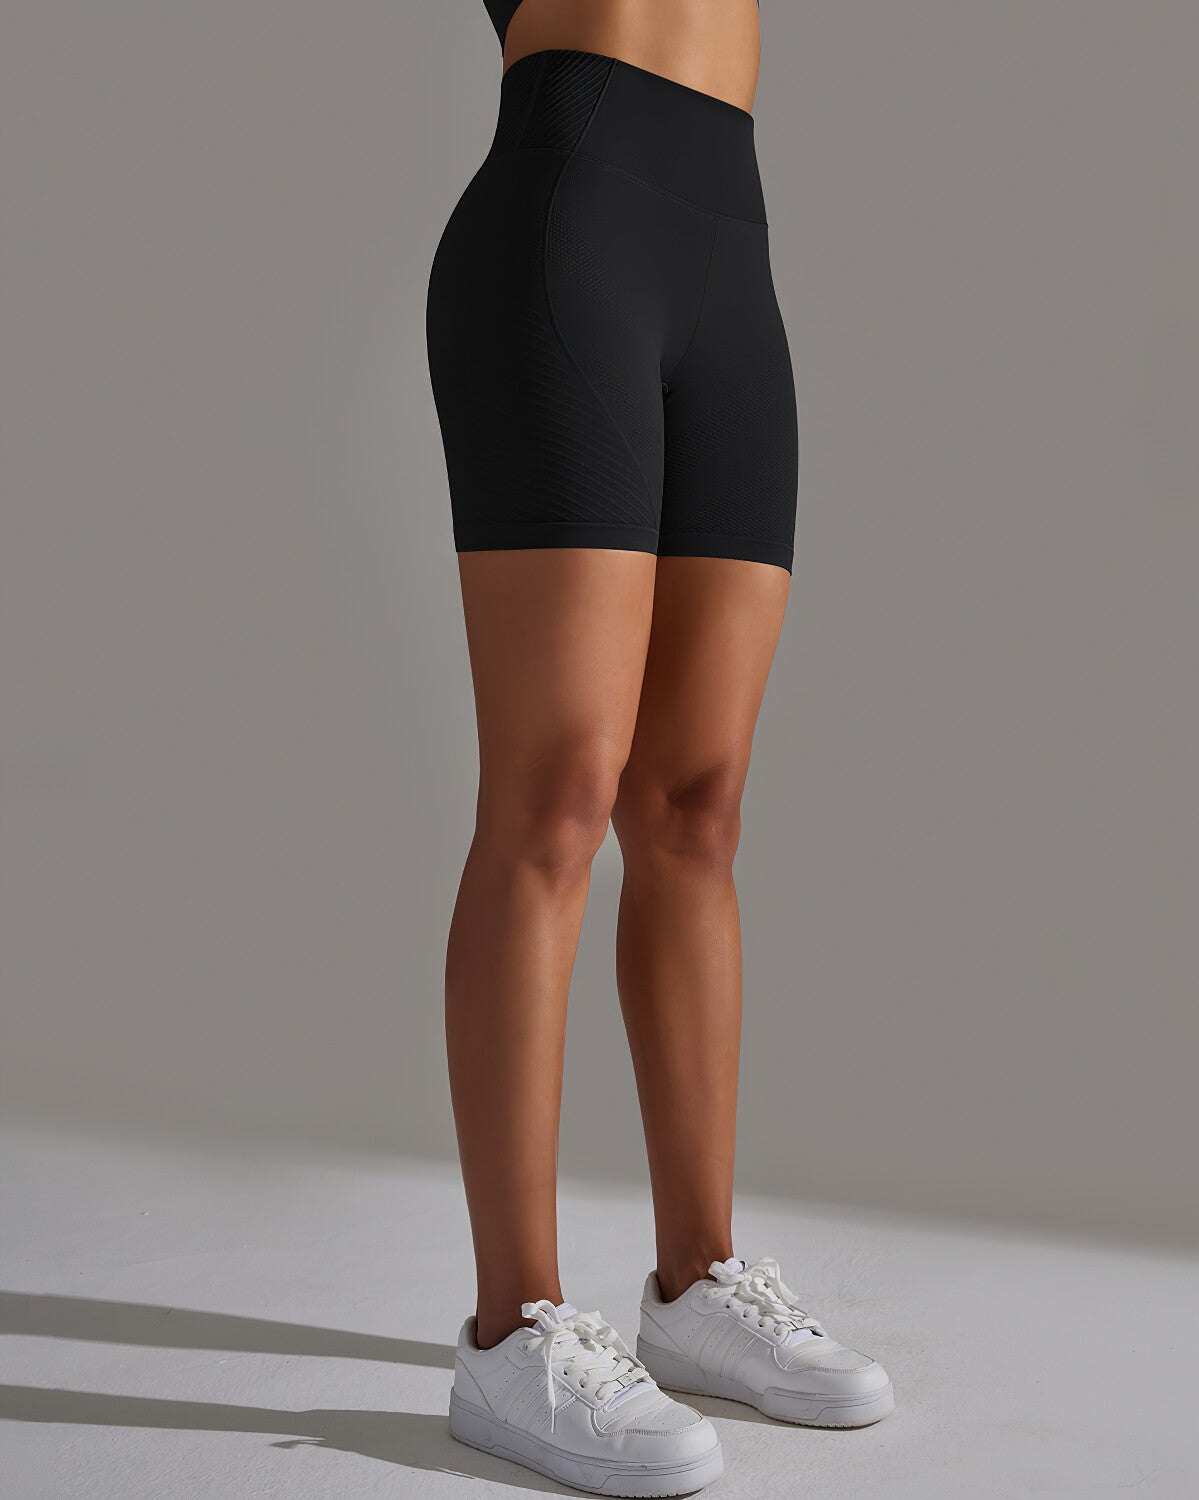 Cheyenne Shorts - Black